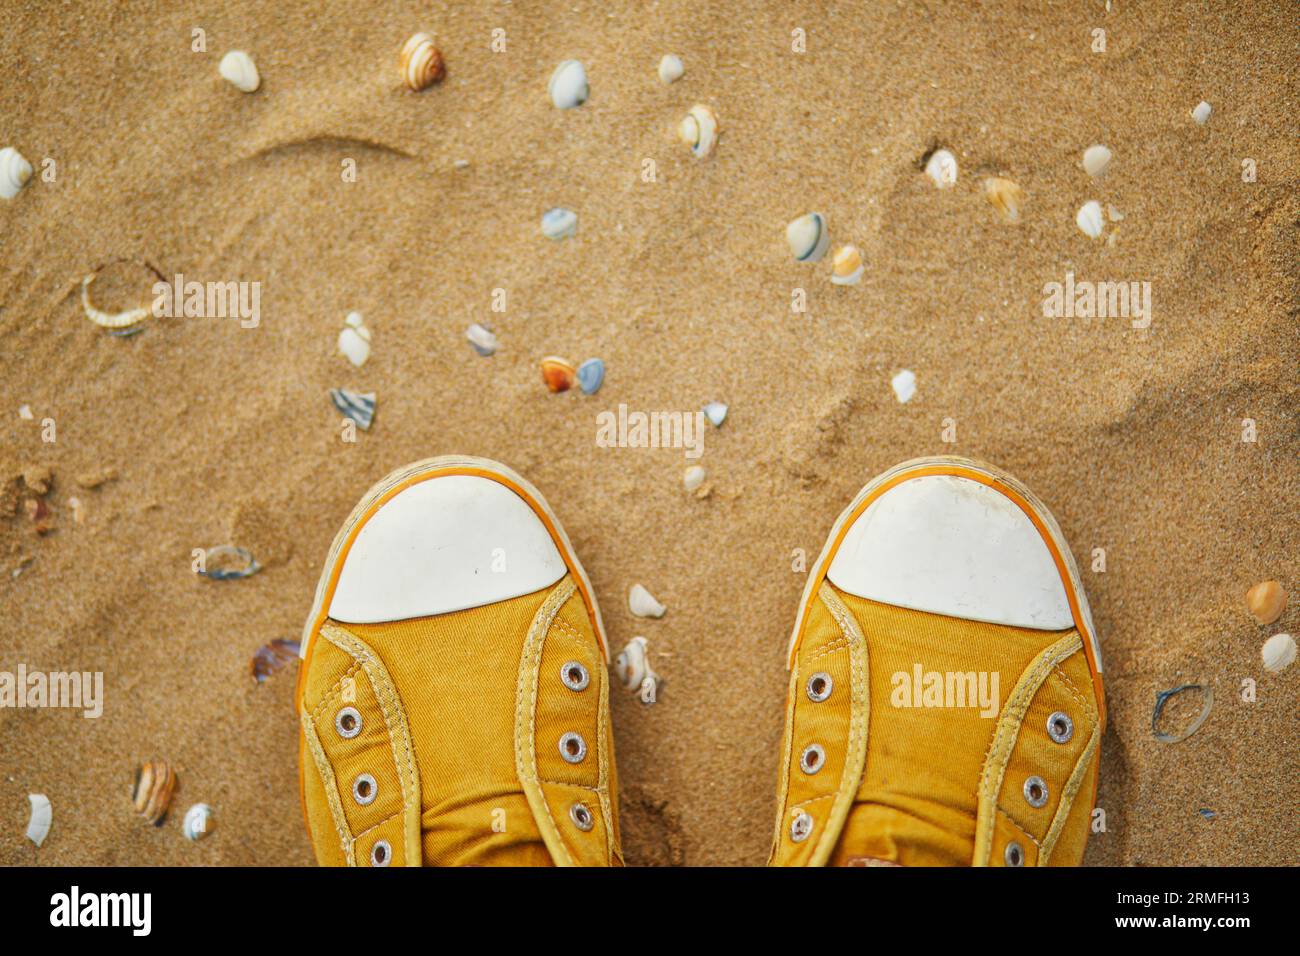 Primo piano di sneakers gialle sulla spiaggia di sabbia con molte conchiglie Foto Stock